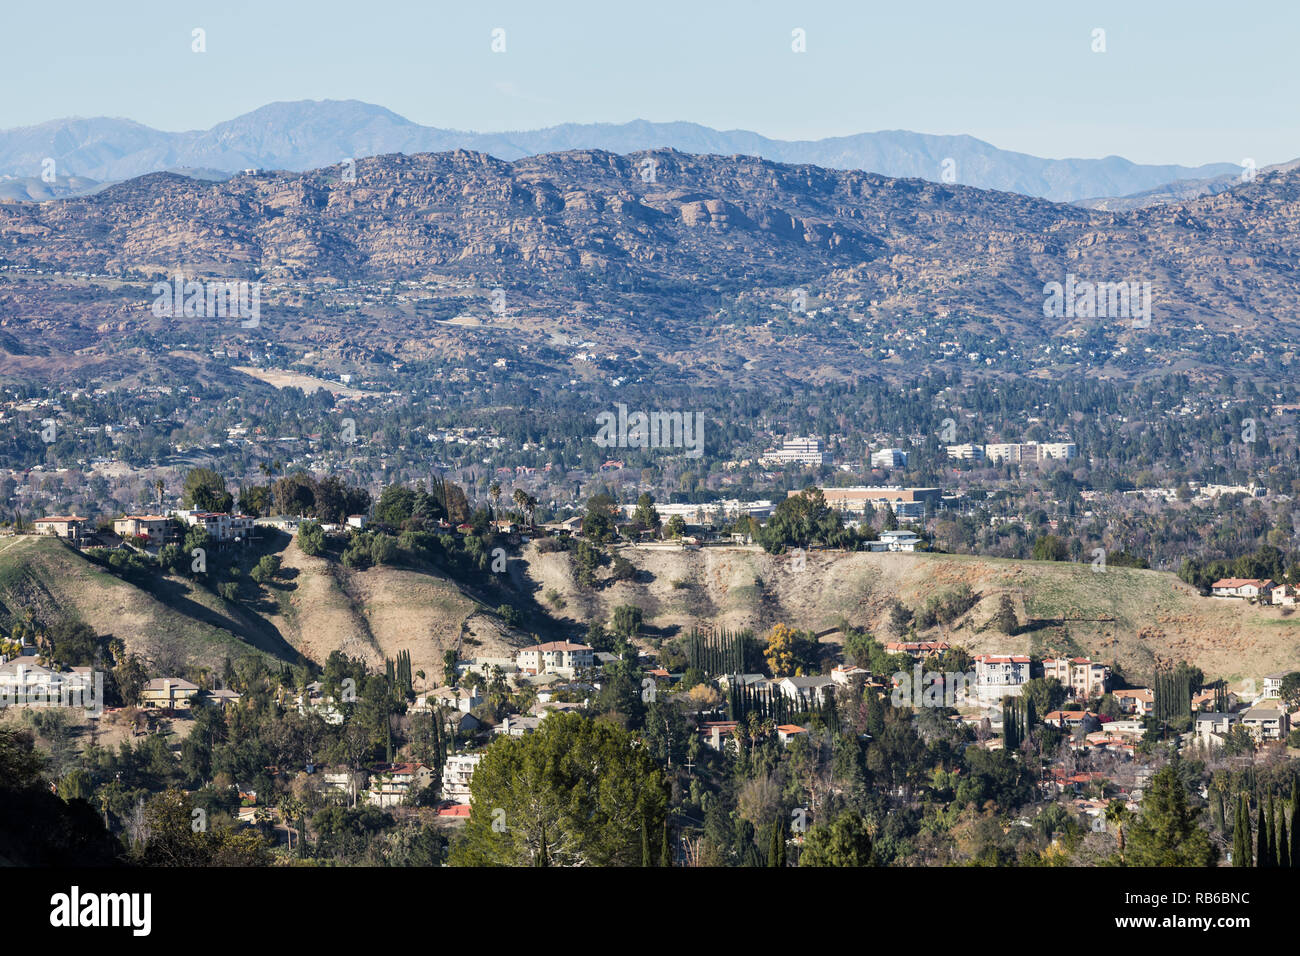 Chiara visualizzazione di Woodland Hills, West Hills, Valle di San Fernando e la Santa Susana Montagne in Los Angeles, California. Foto Stock